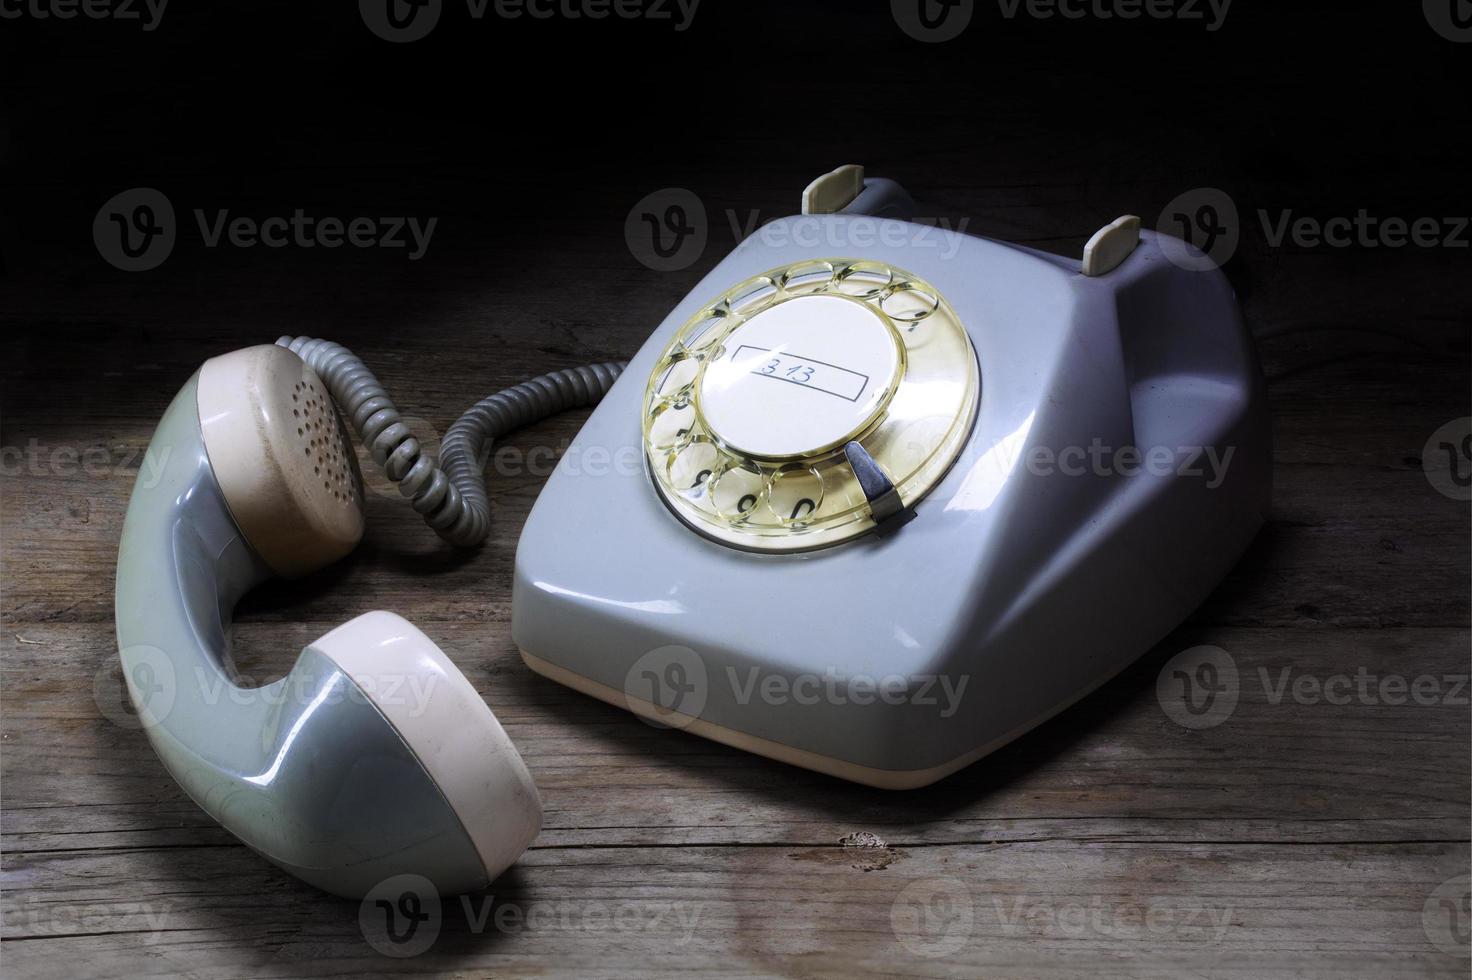 telefone rotativo retro com botão rotativo e receptor removido no foto